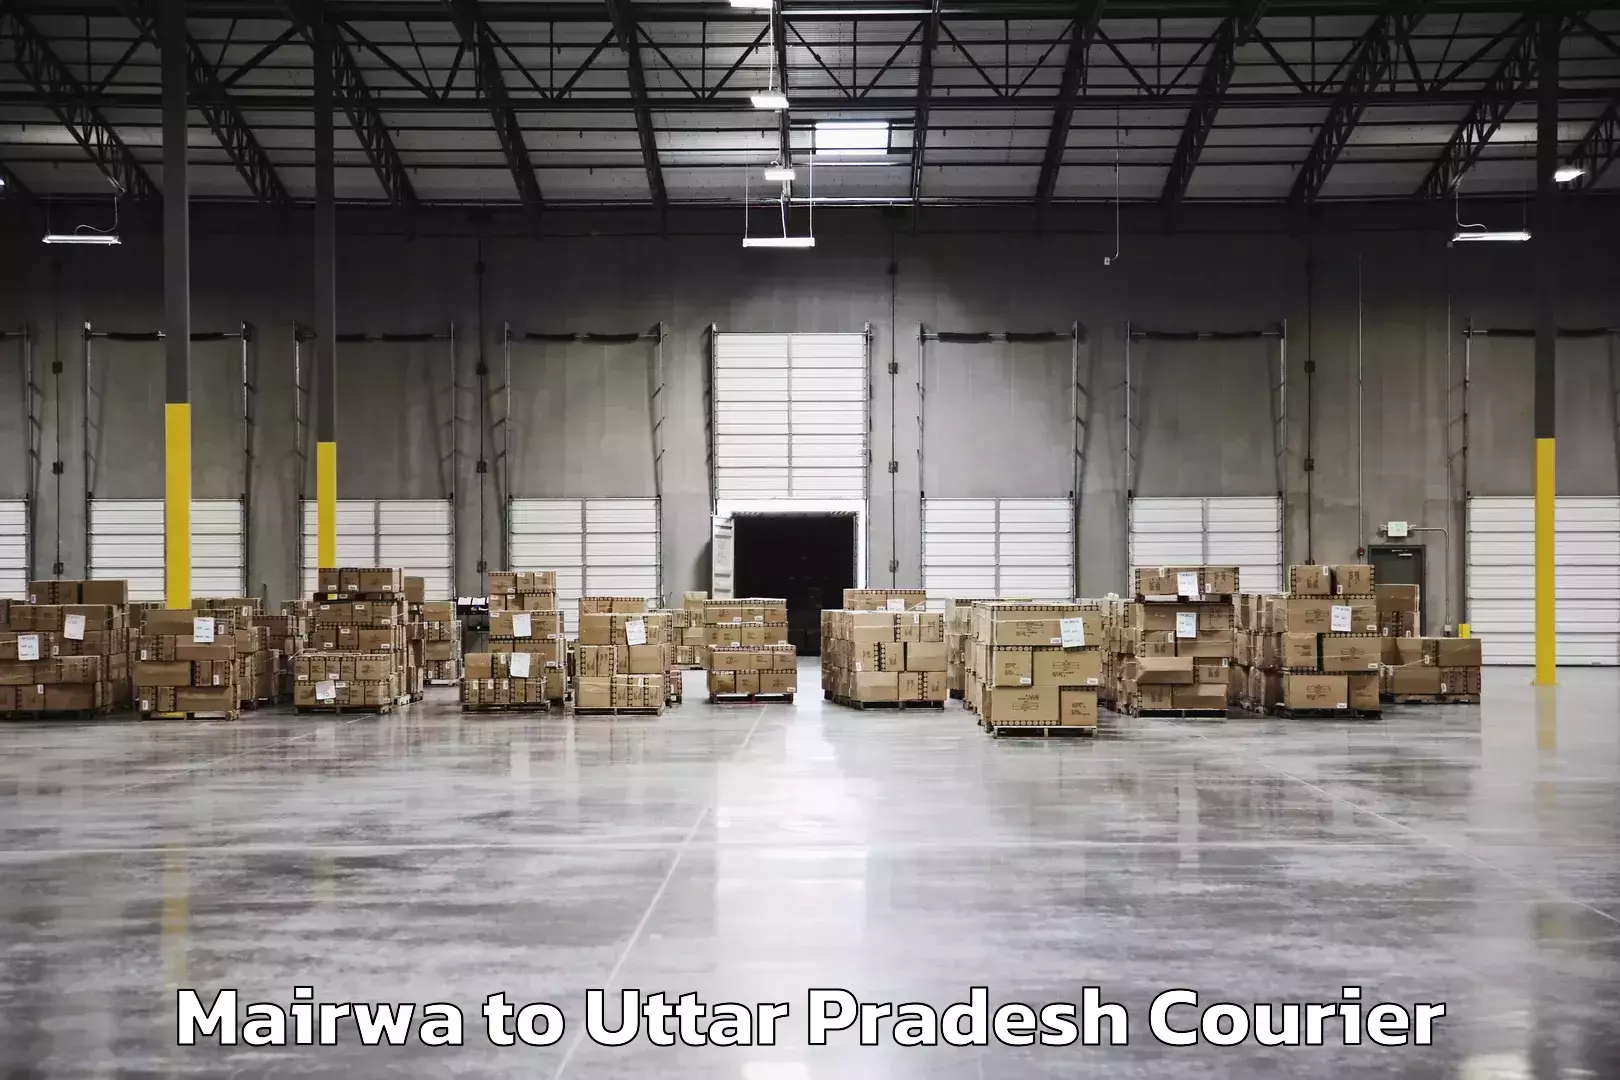 Customizable shipping options Mairwa to Uttar Pradesh